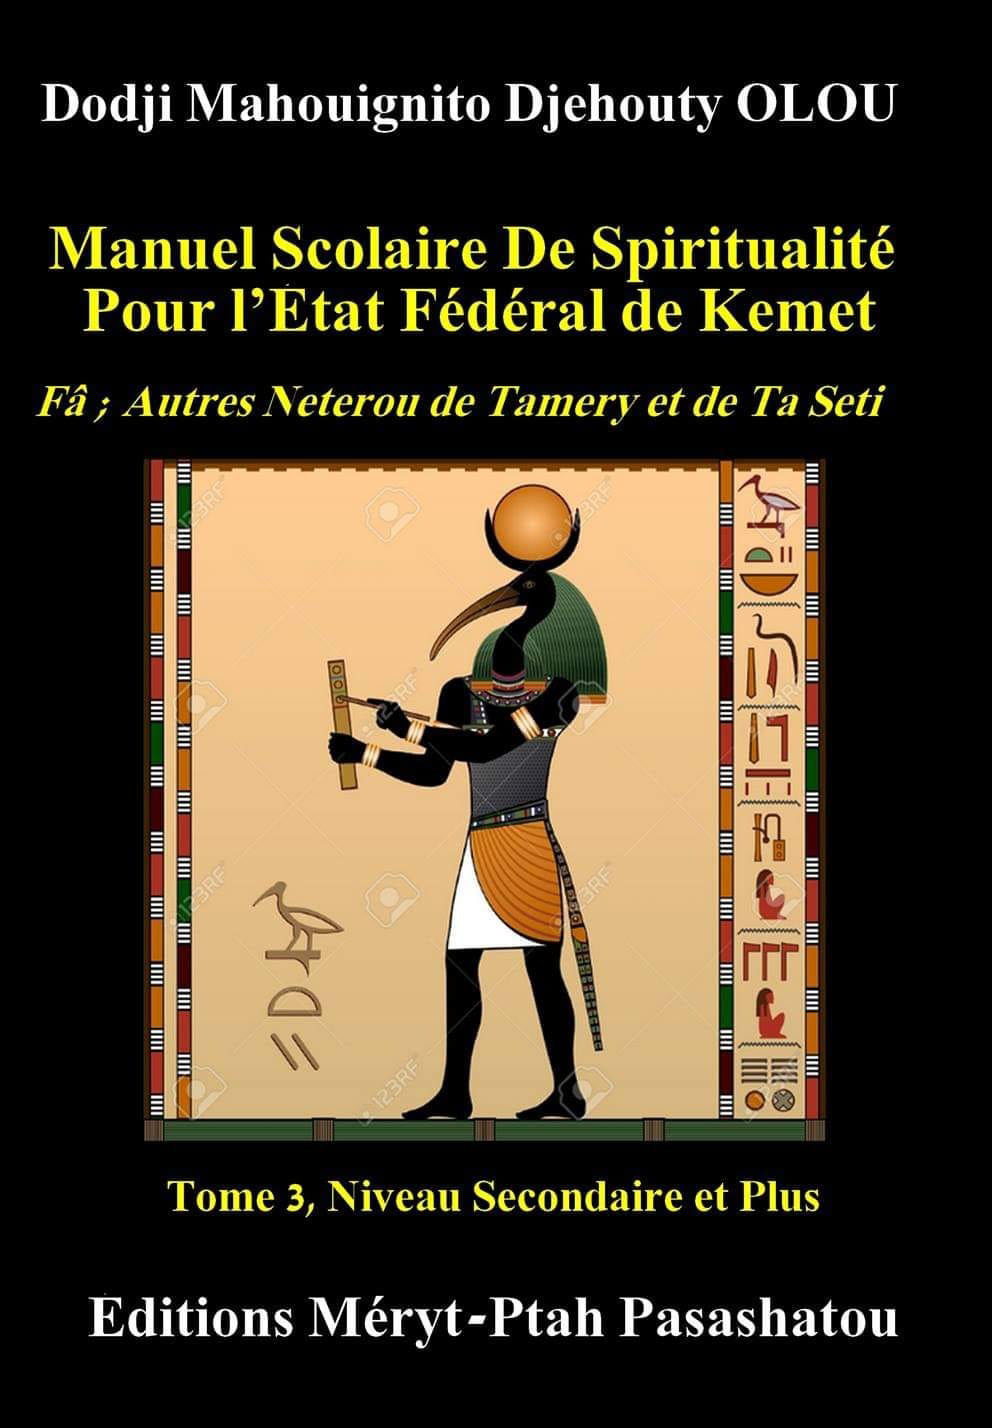 MANUEL SCOLAIRE DE SPIRITUALITE POUR L’ETAT FEDERAL DE KEMET Tome 3